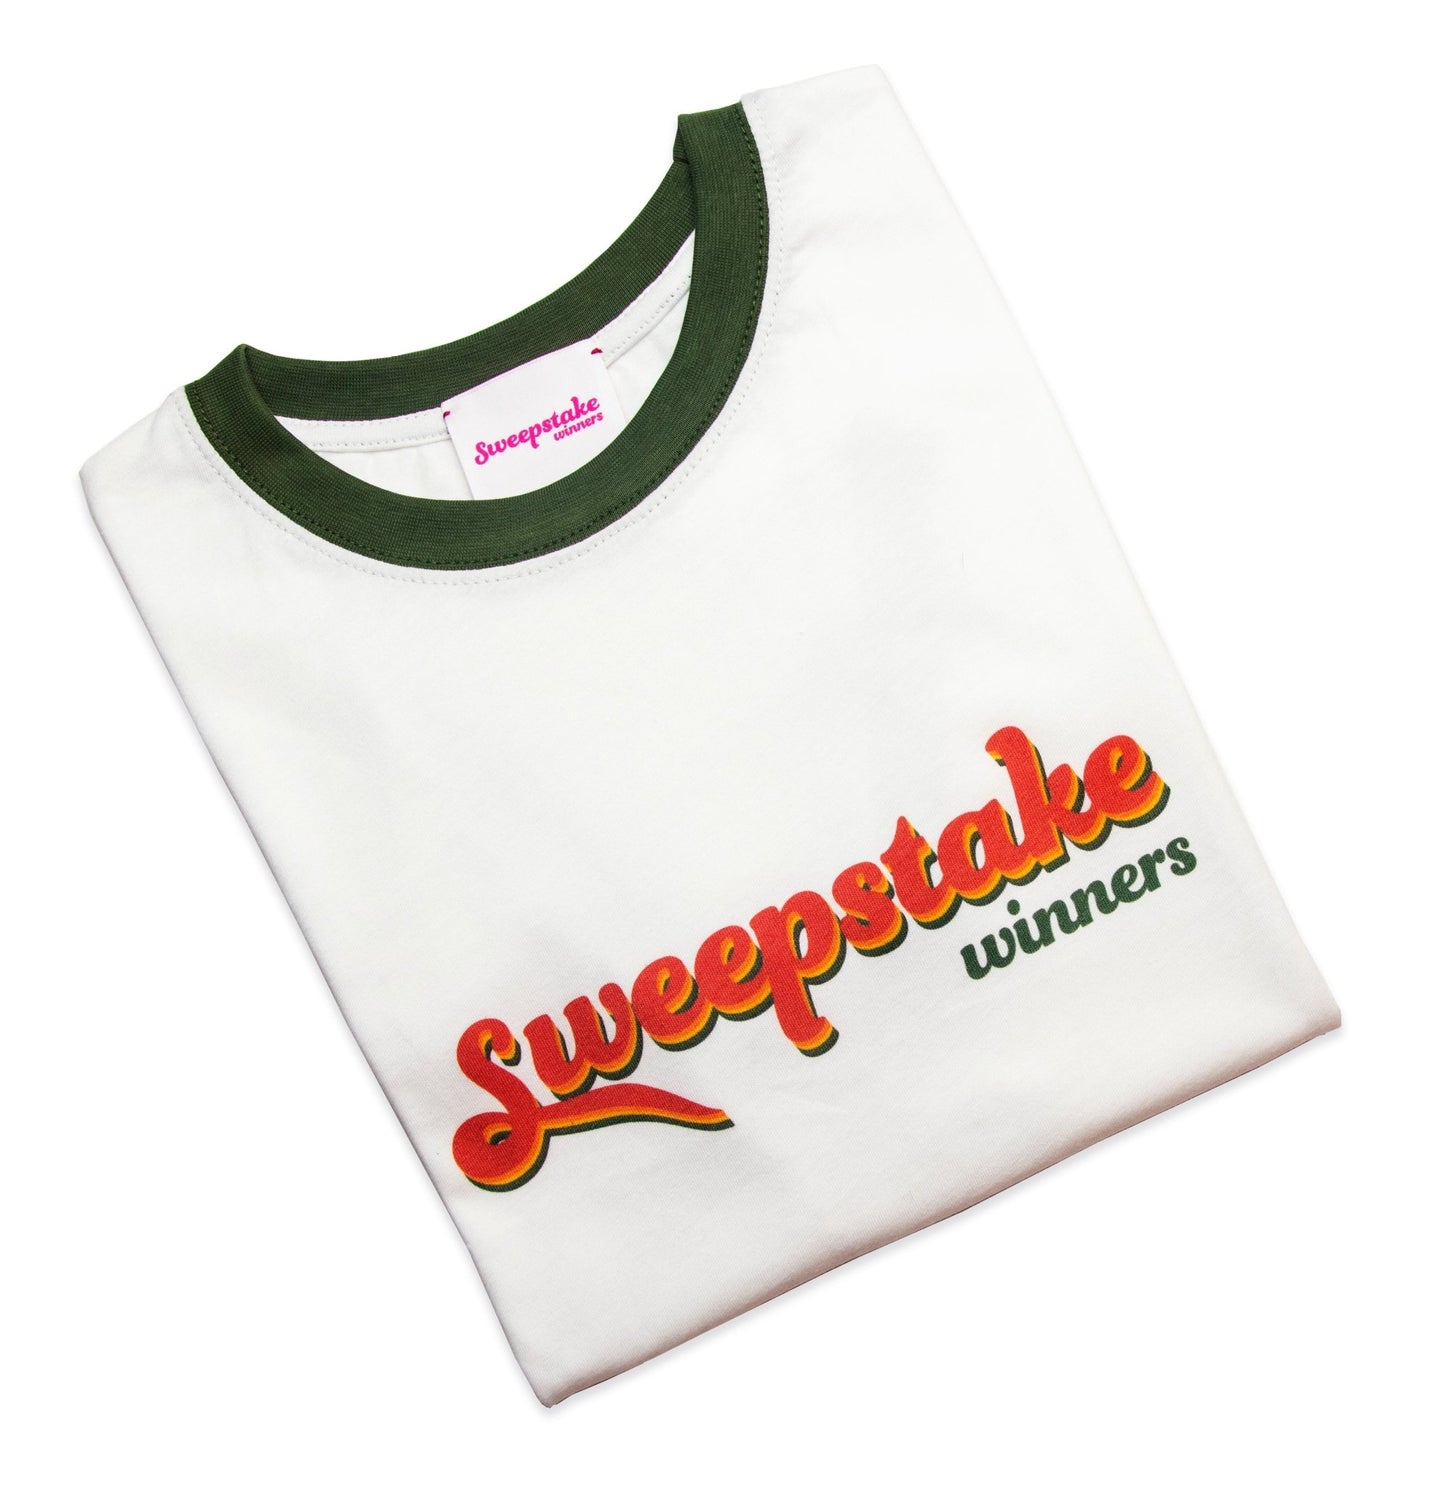 Retro Logo Tee (Khaki Green/White) - Sweepstake Winners™